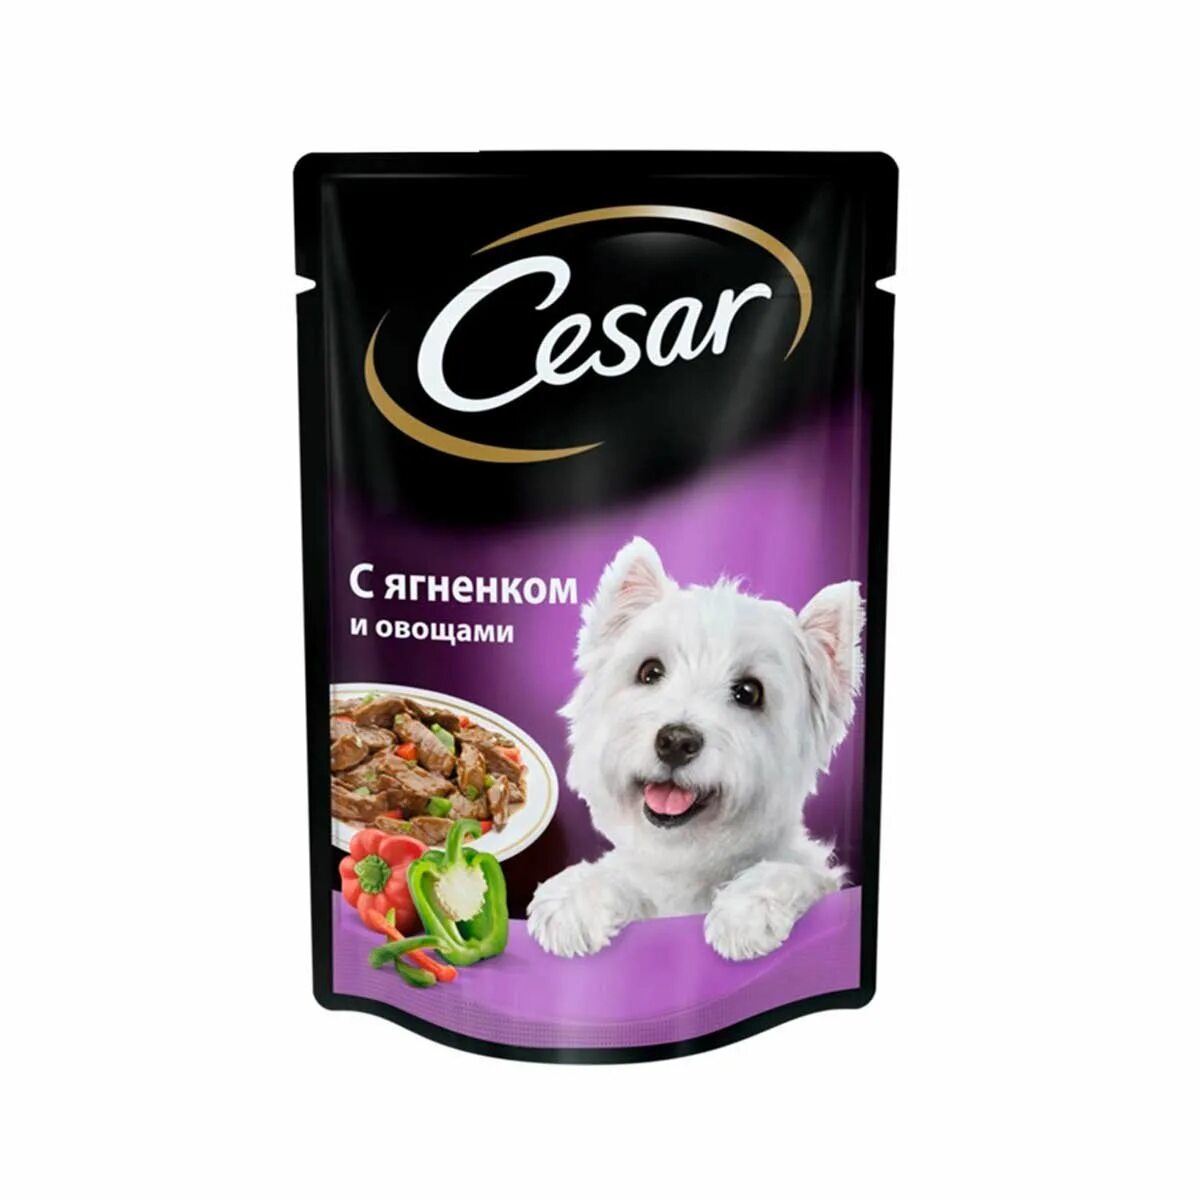 Влажные корма для собак премиум. Корм для собак Cesar ягненок 100г. Корм для собак Cesar ягненок в сырном соусе 100г. Влажный корм для собак Cesar. Сезар корм влажный для собак.